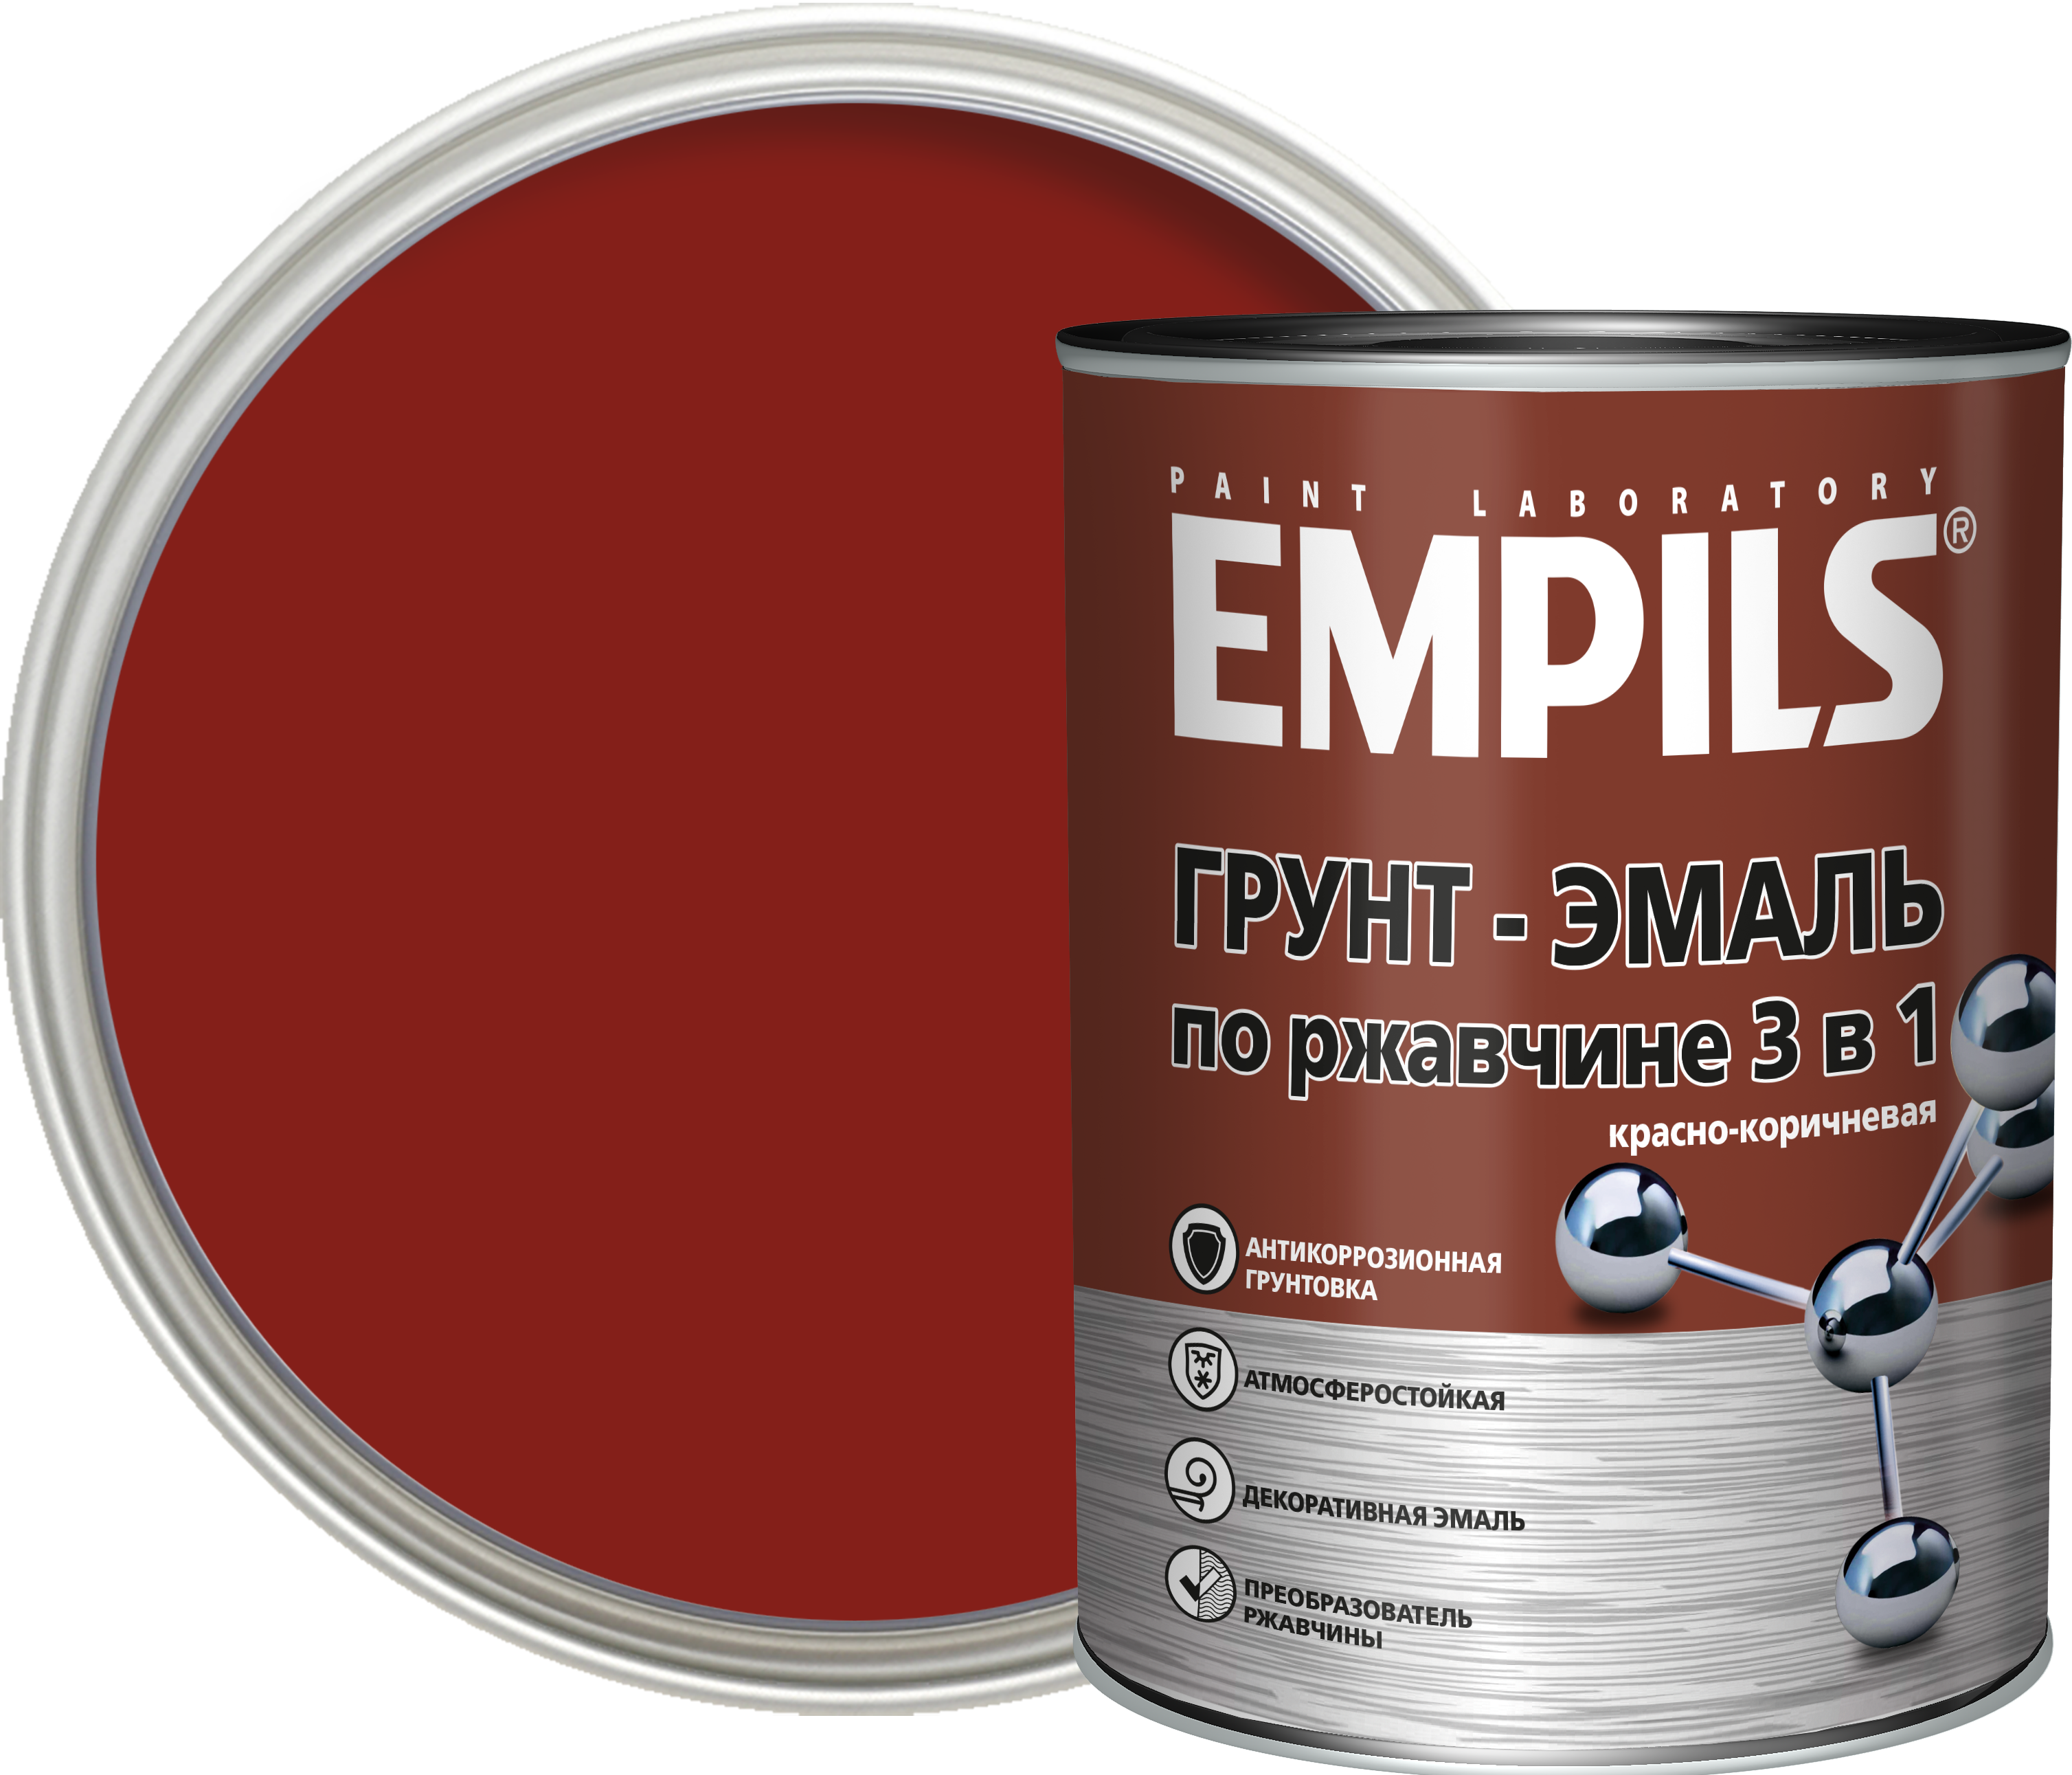 Empils грунт эмаль по ржавчине. Грунт-эмаль Ecomast 105 (красно-коричневый). Грунт-эмаль по ржавчине 3 в 1. Грунт эмаль Железный сурик по ржавчине.